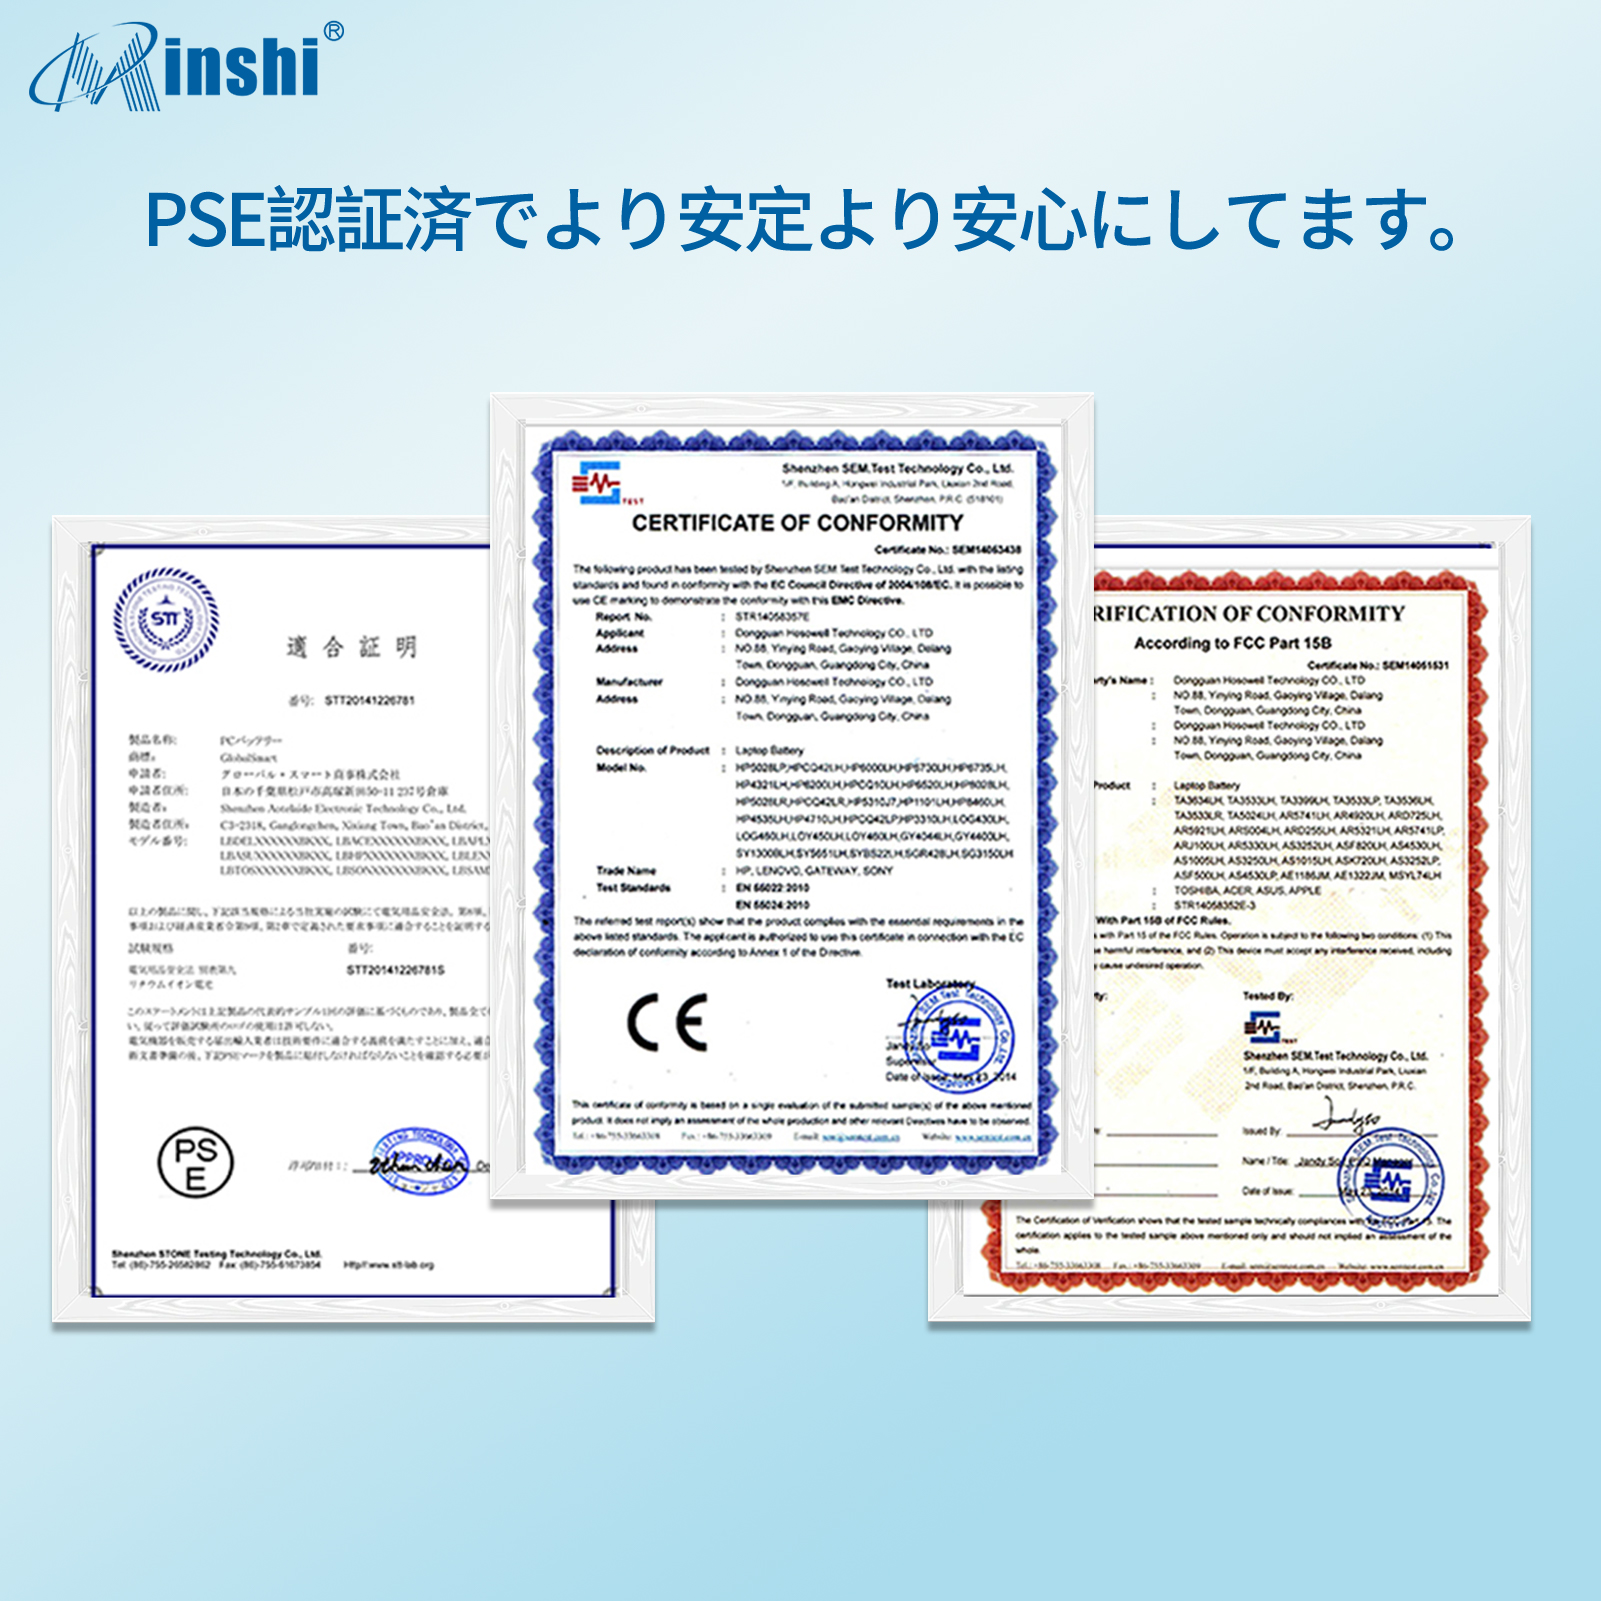  minshi DELL XPS 12 (L221x) D-1708 対応 互換バッテリー  PSE認定済 交換用バッテリー